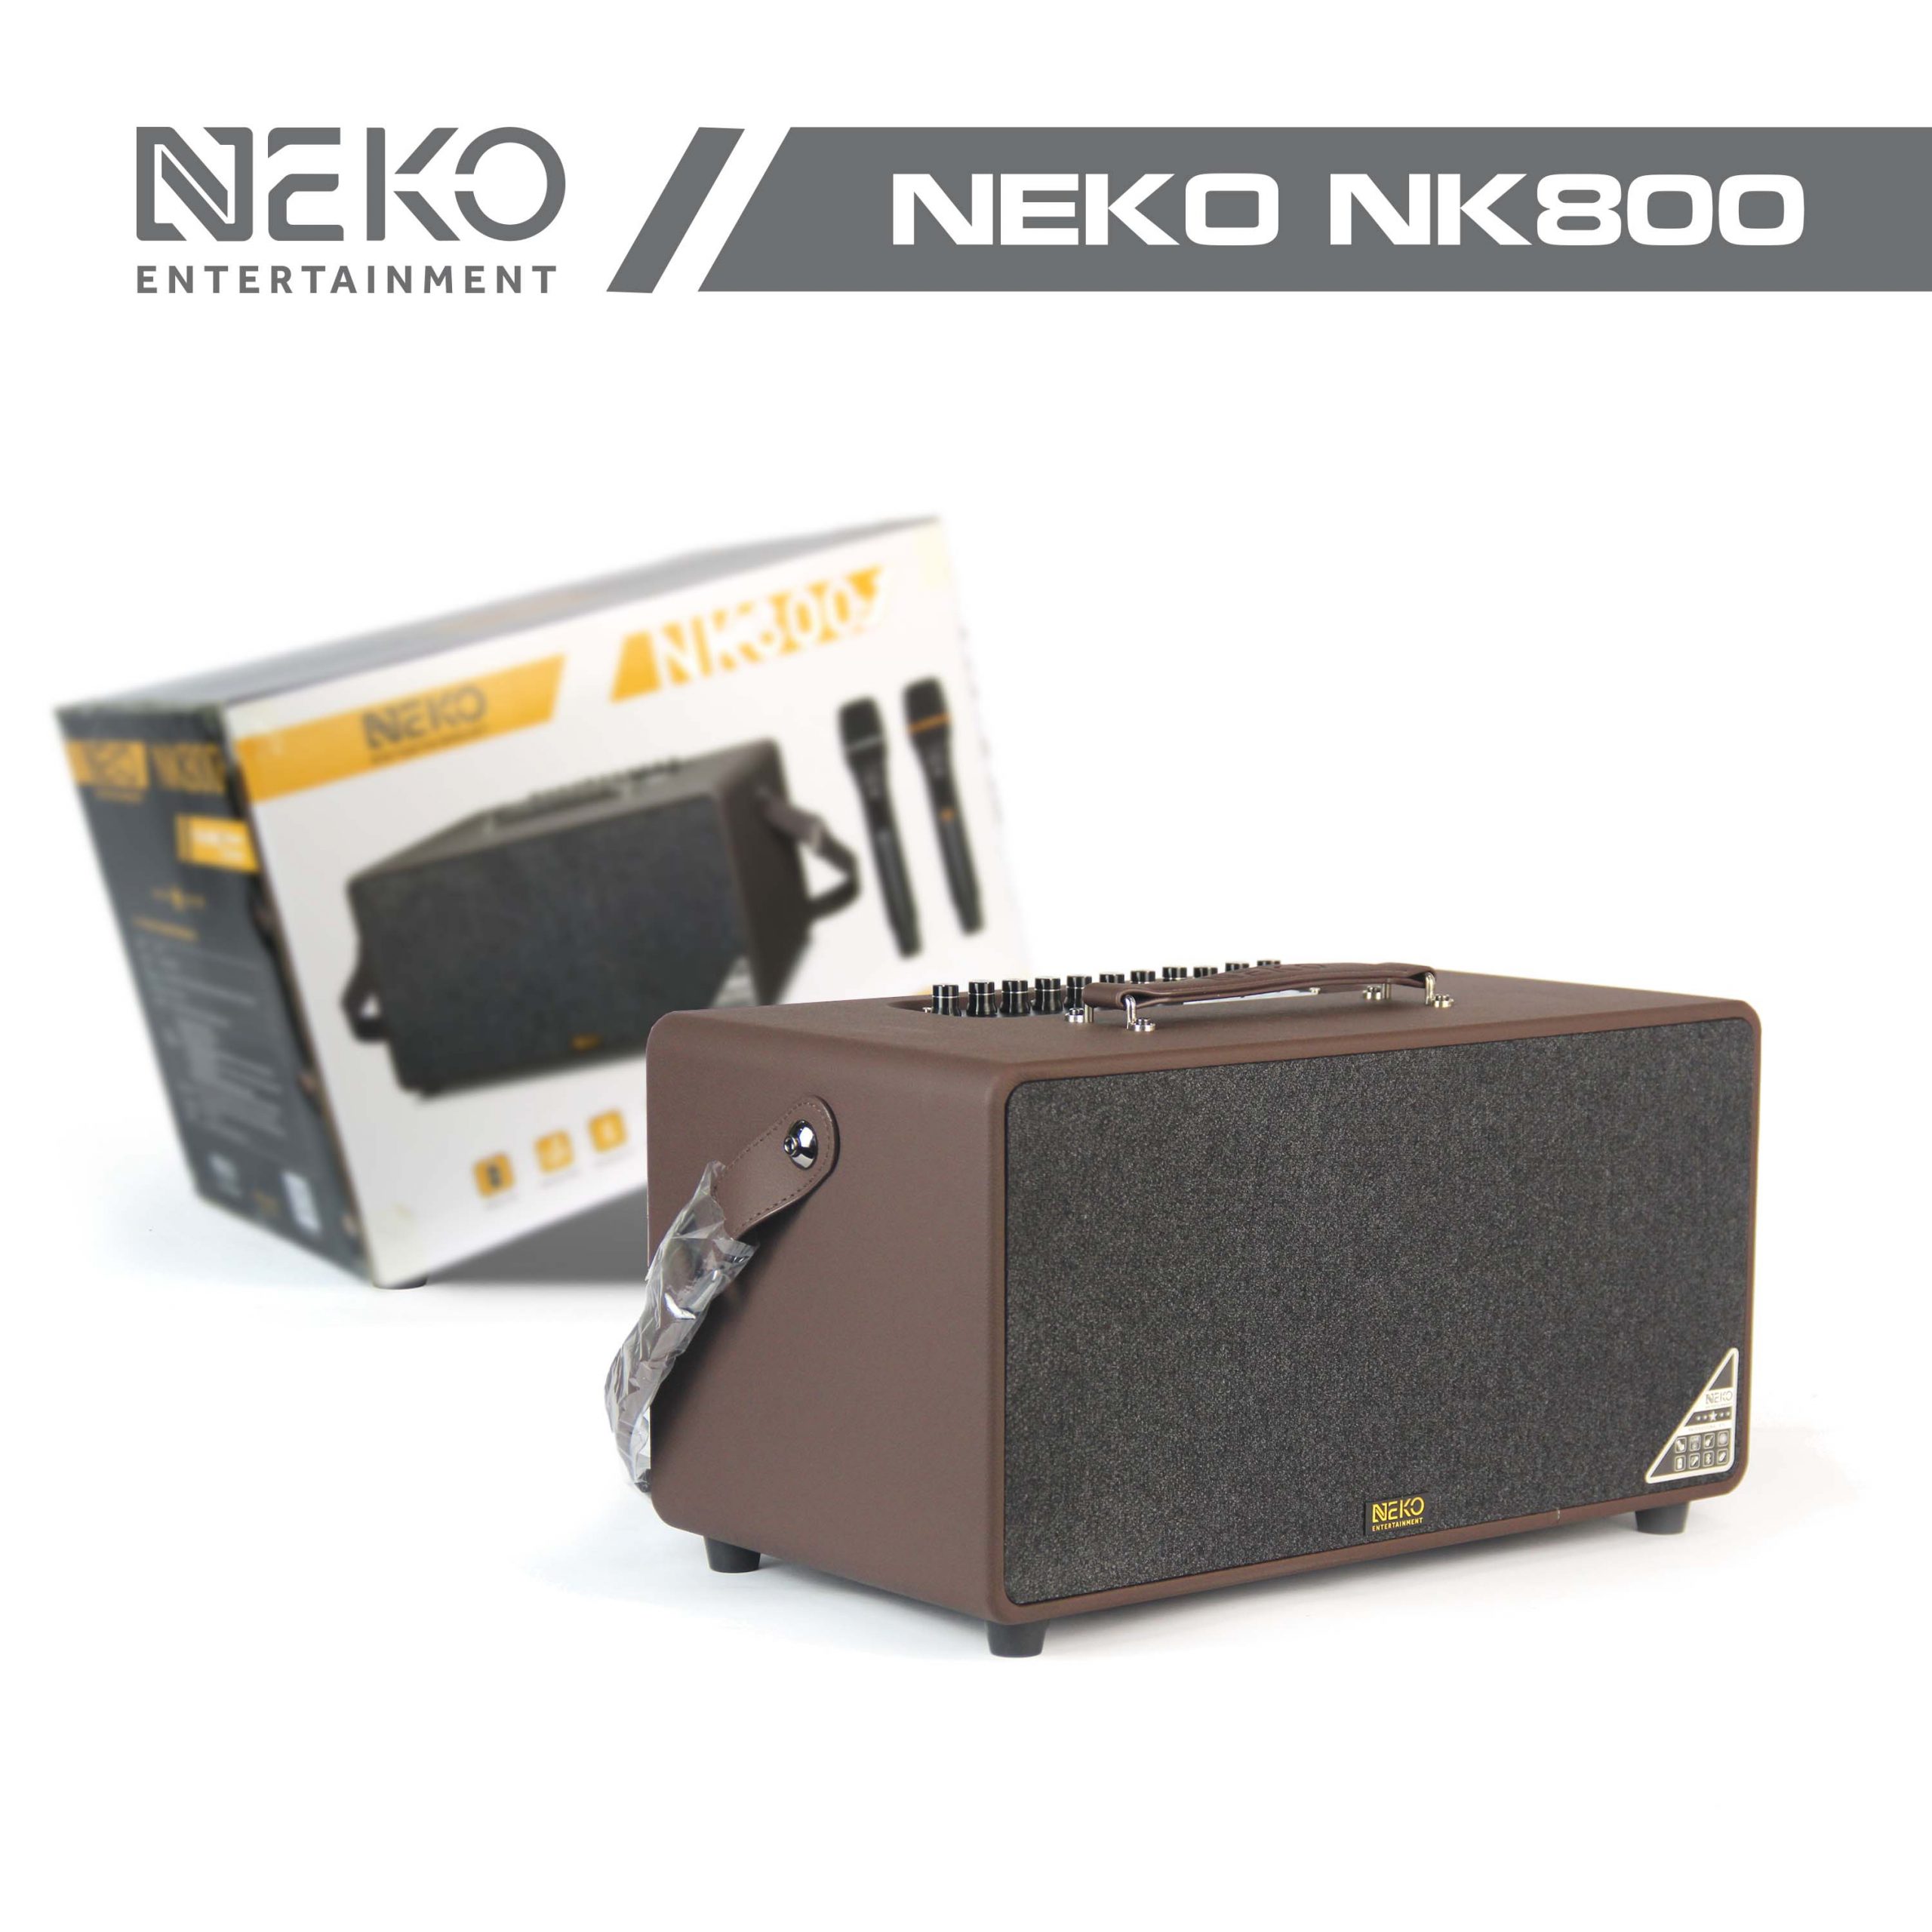 Loa Karaoke Xách Tay Neko NK800 (Công Suất 120W, Kèm 2 Micro Không Dây UFH) - Hàng Chính Hãng